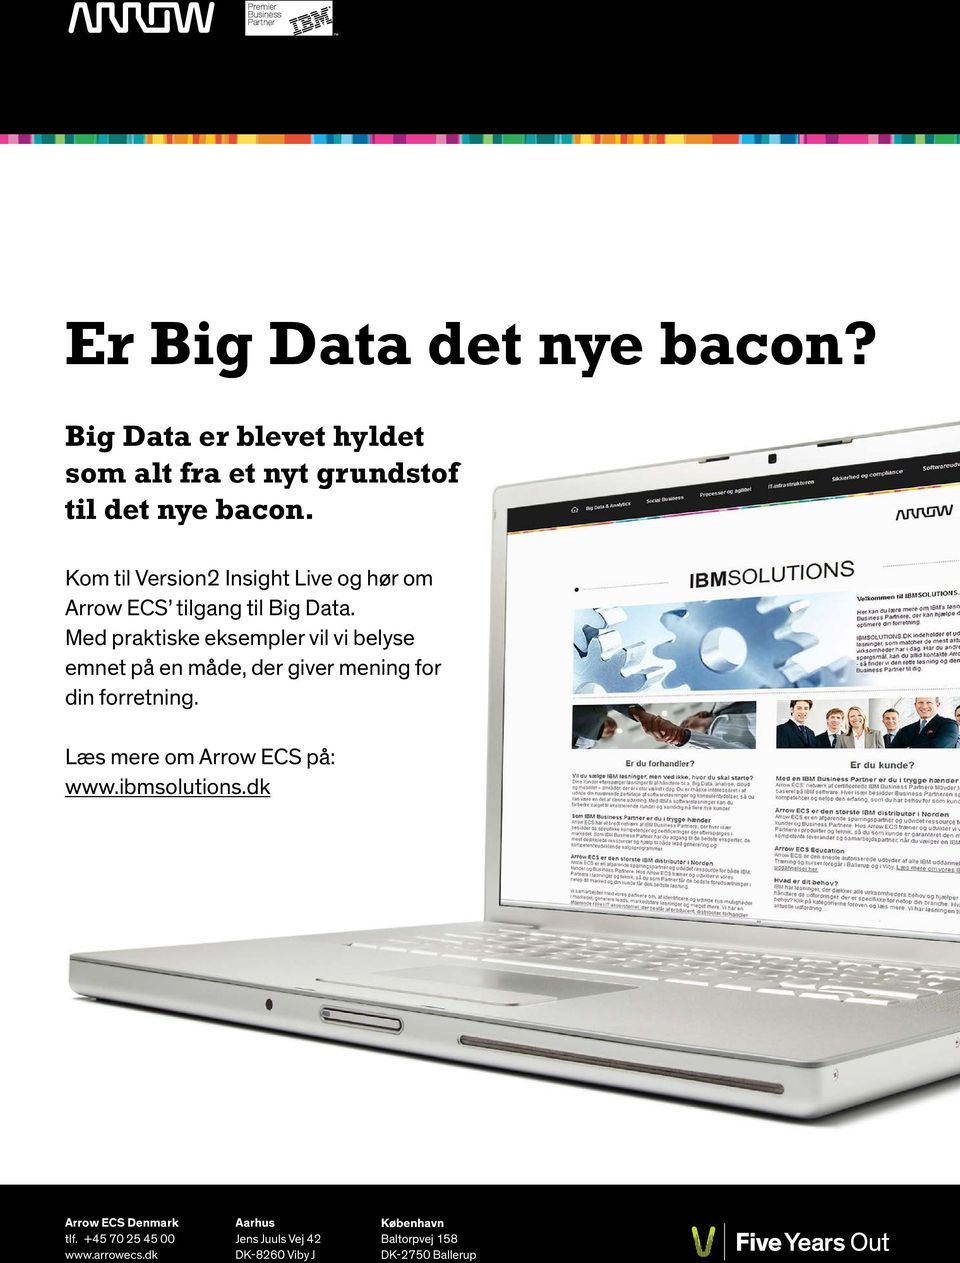 Kom til Version2 Insight Live og hør om Arrow ECS tilgang til Big Data.